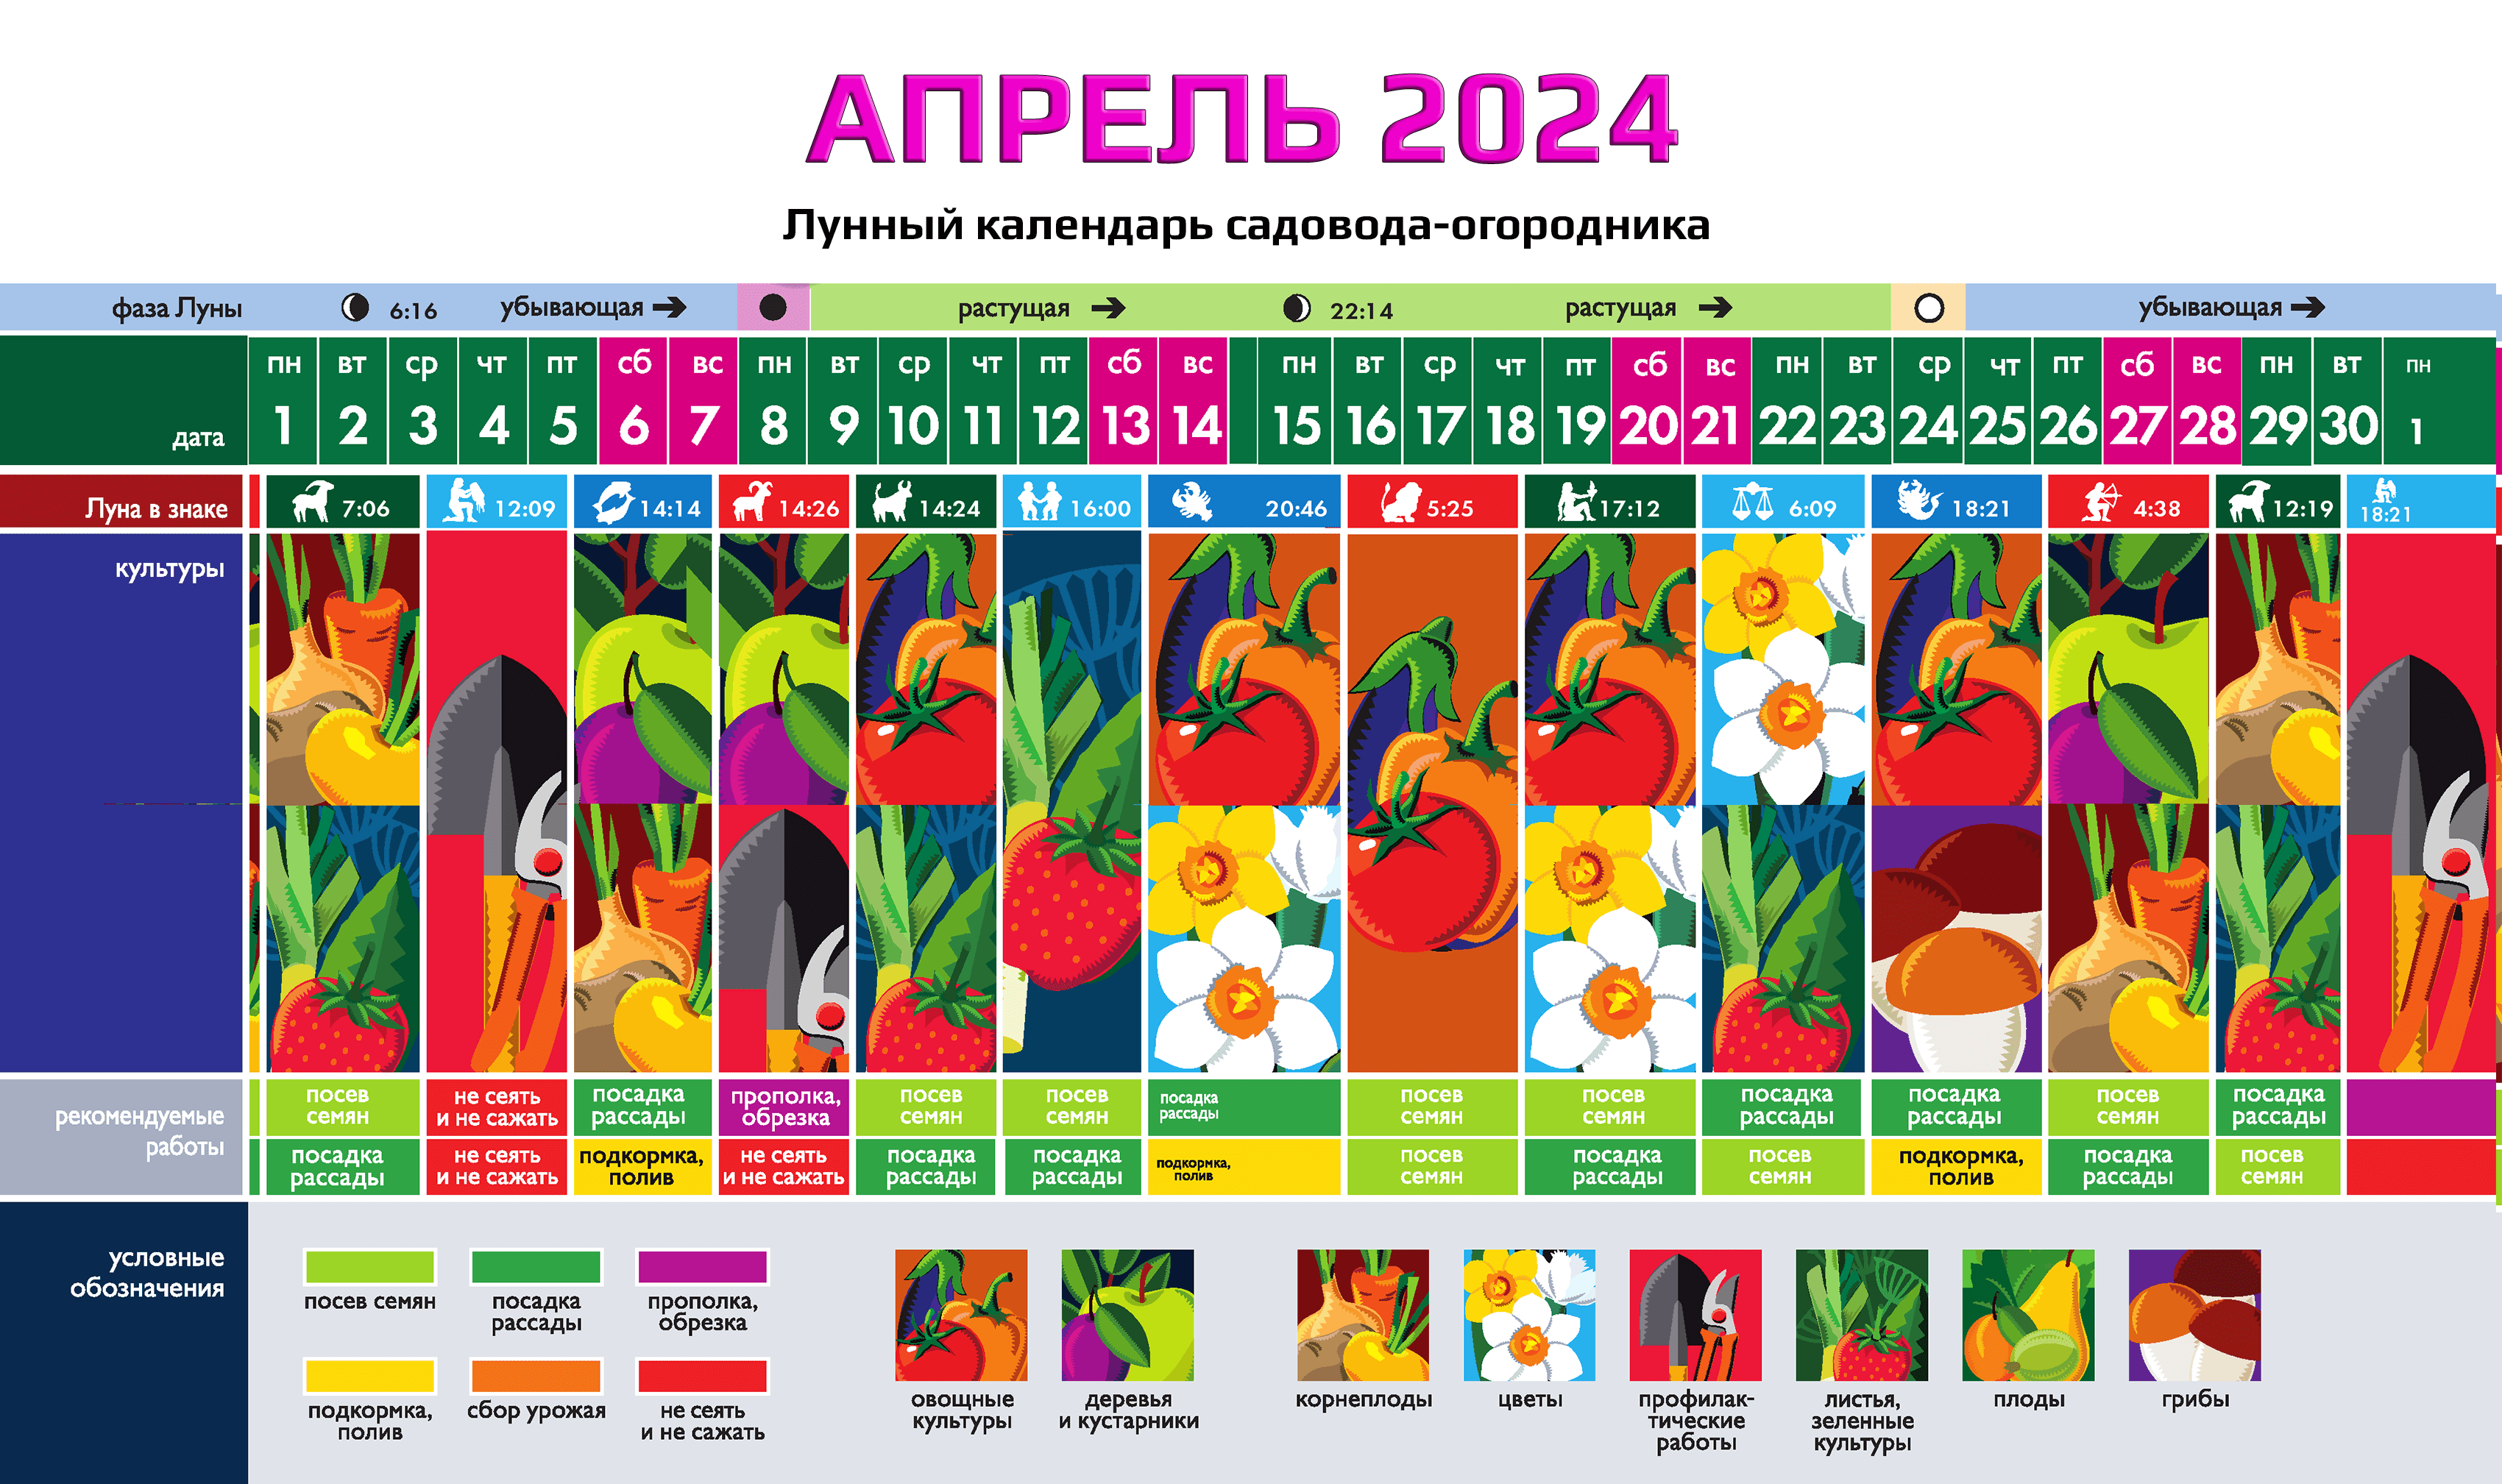 Календарь огородника на апрель 2023